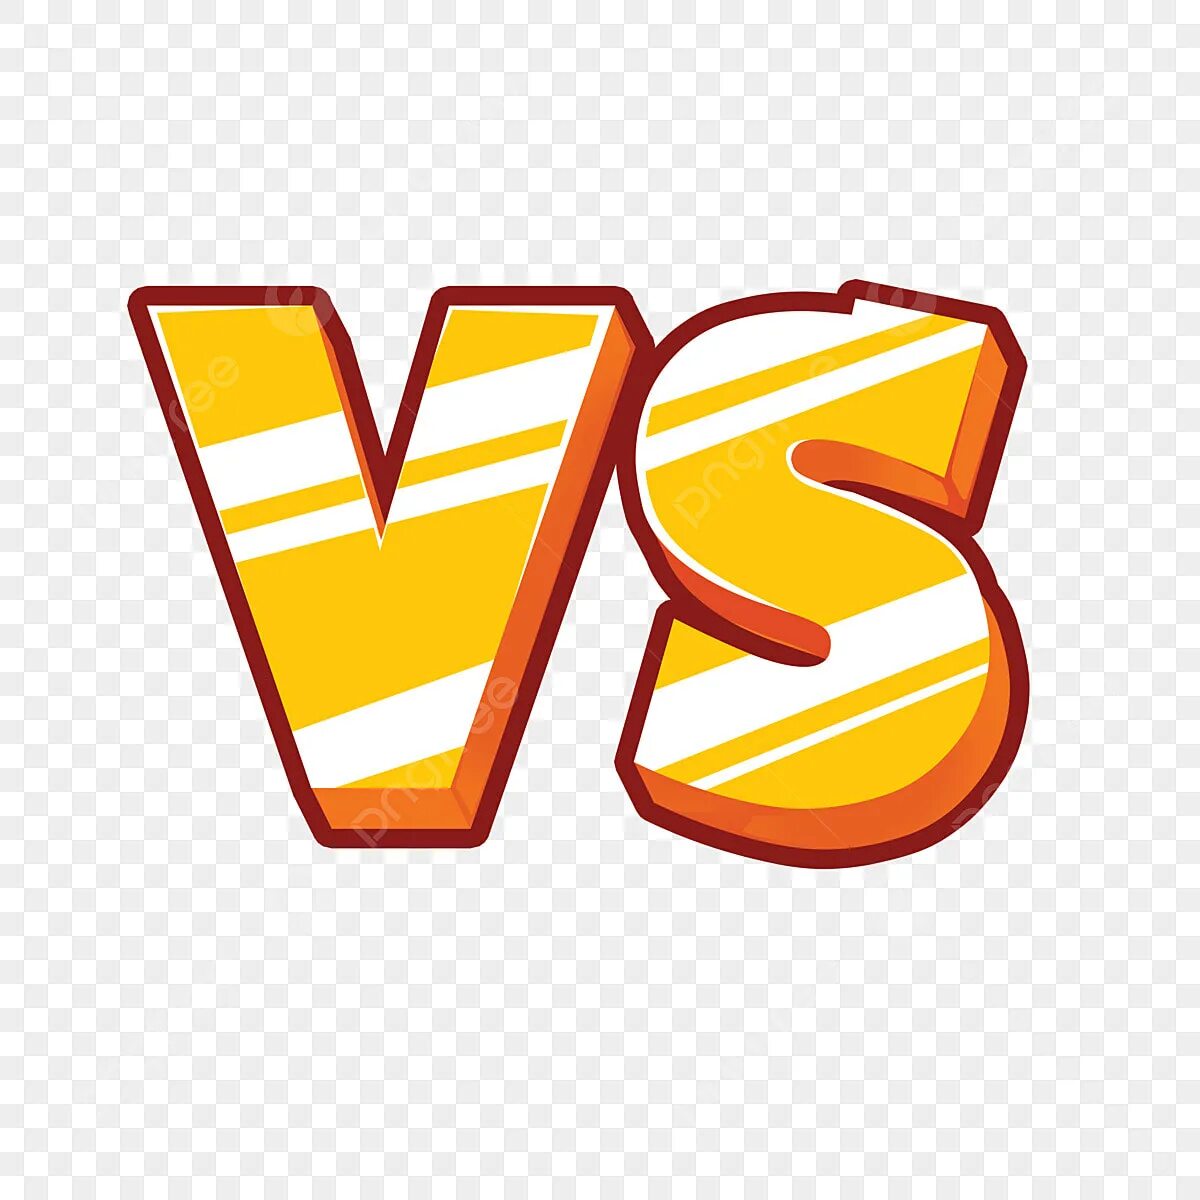 Значок vs. Надпись vs. Vs для фотошопа без фона. Vs на прозрачном фоне.